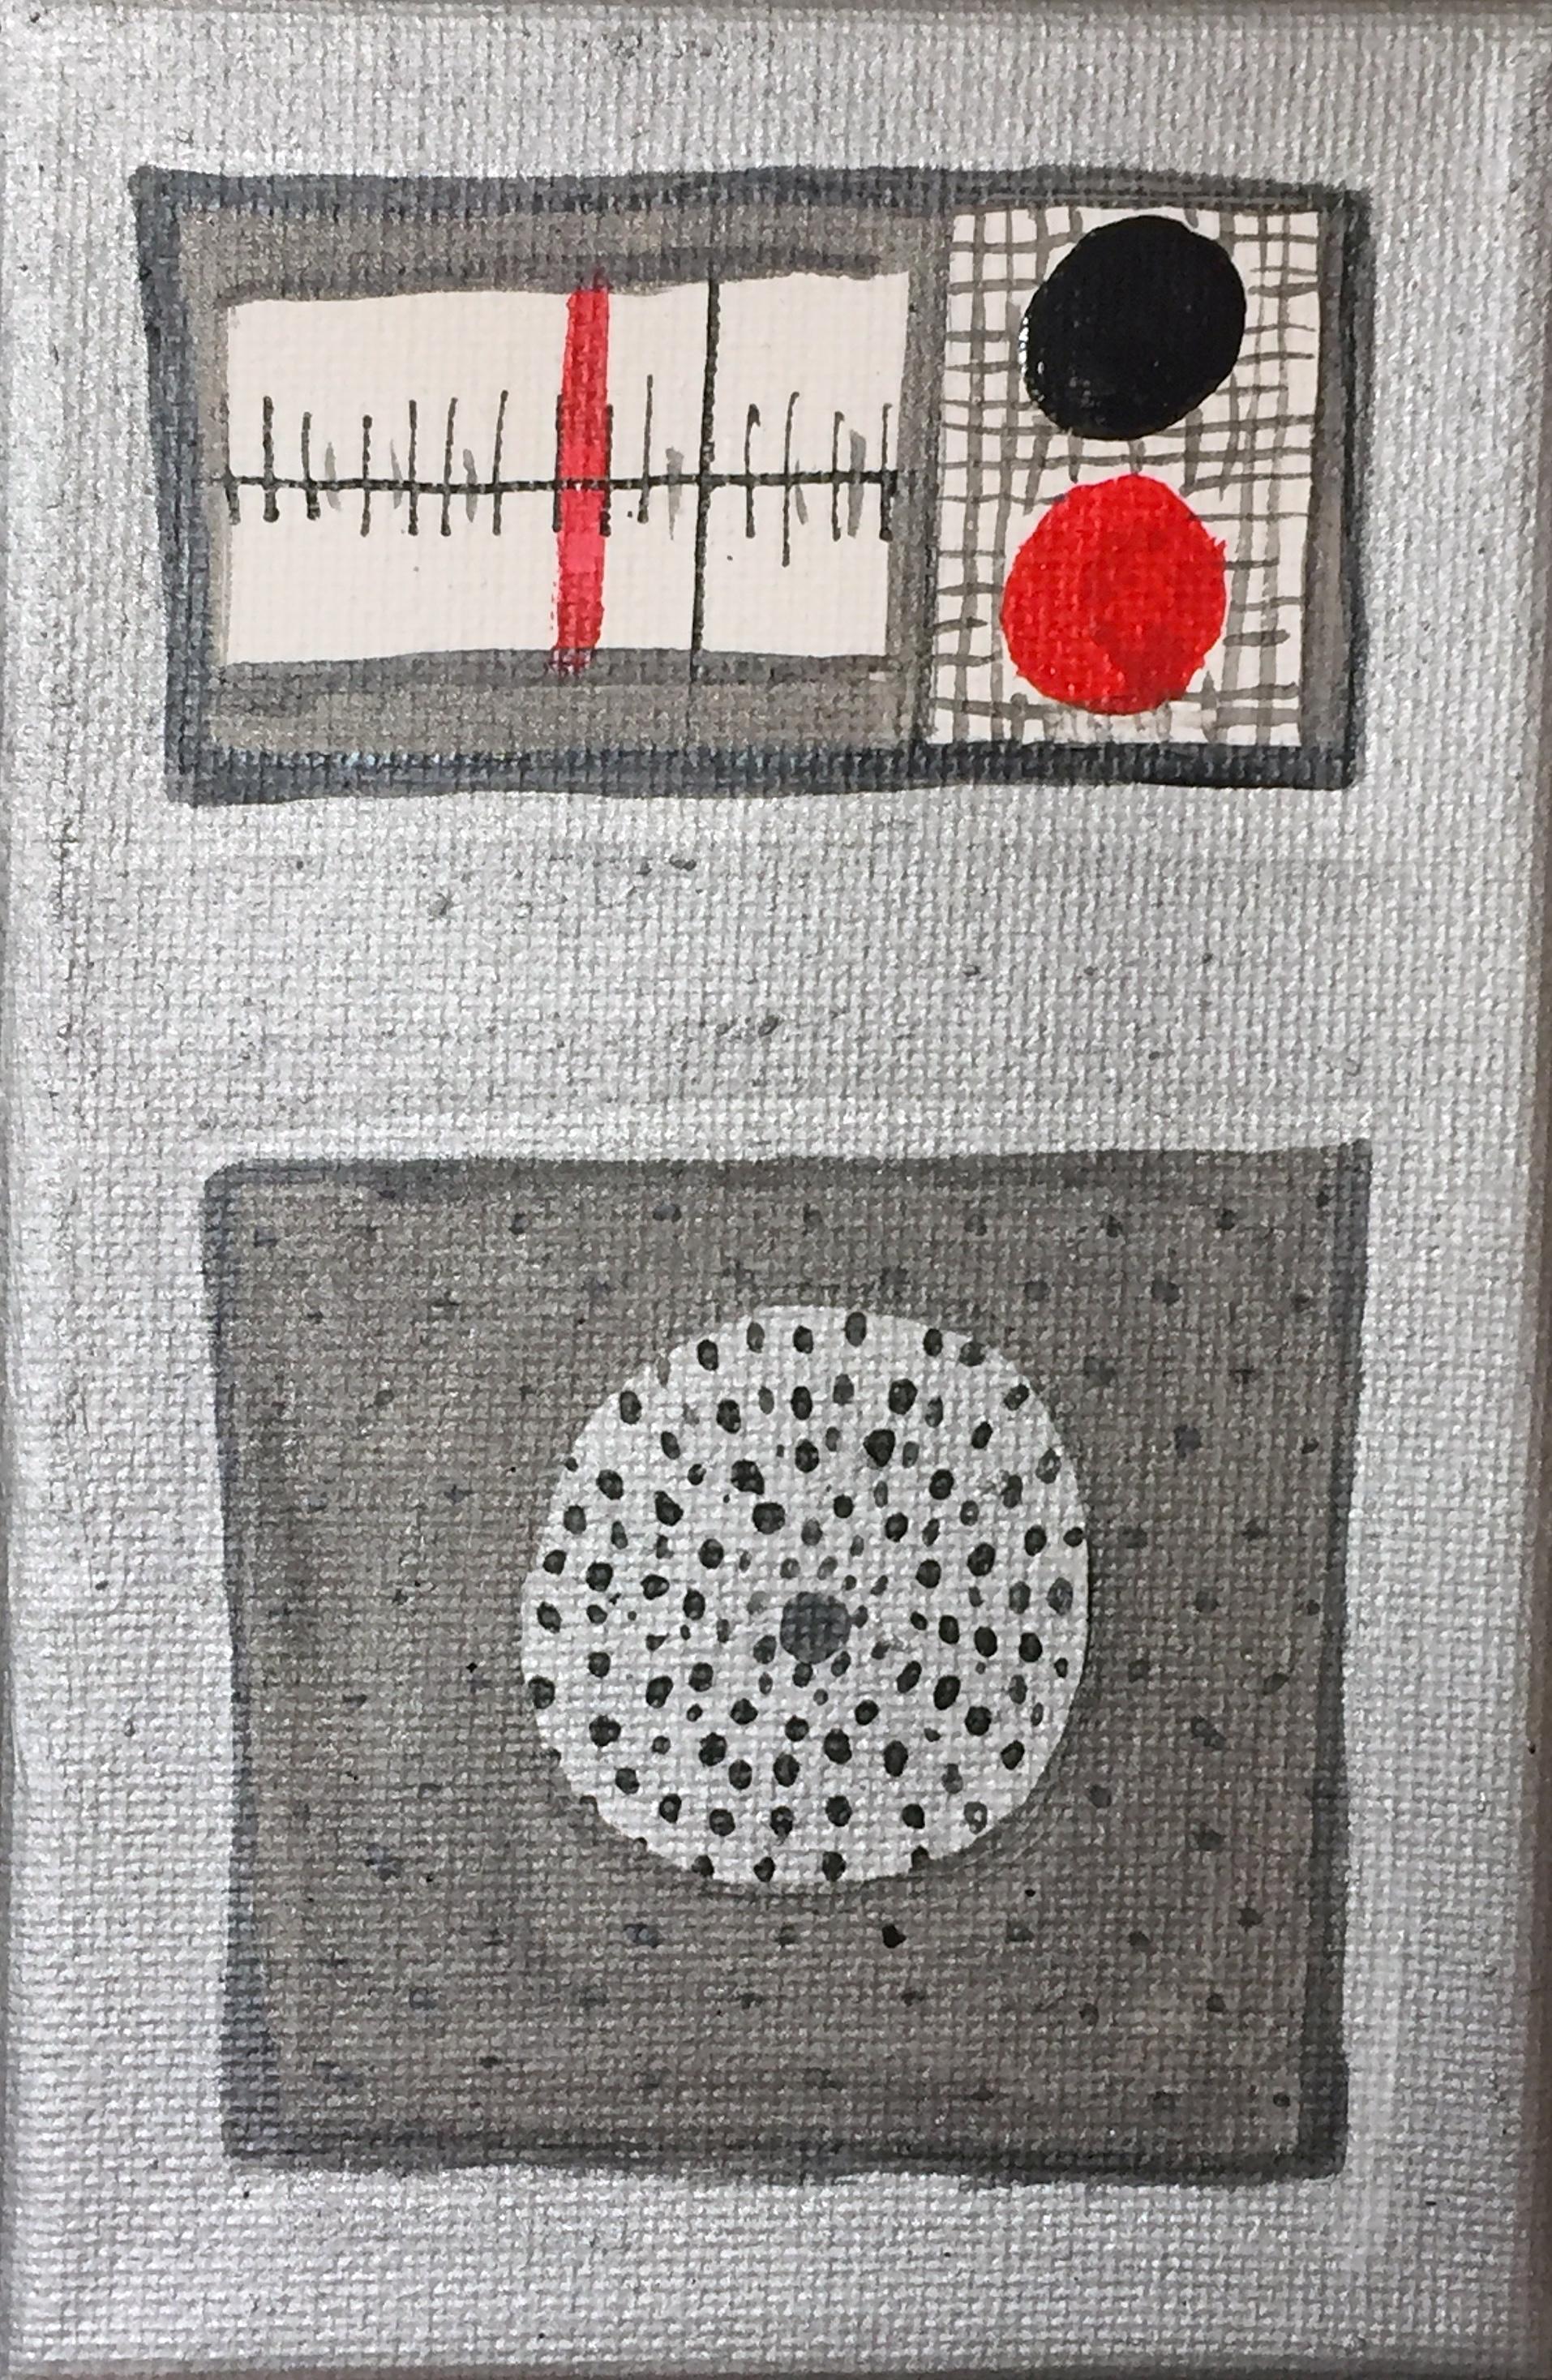 Transistor Radio, Gemälde auf Leinwand, 4x6 Zoll, Mute-Serie, von Nina Bovasso